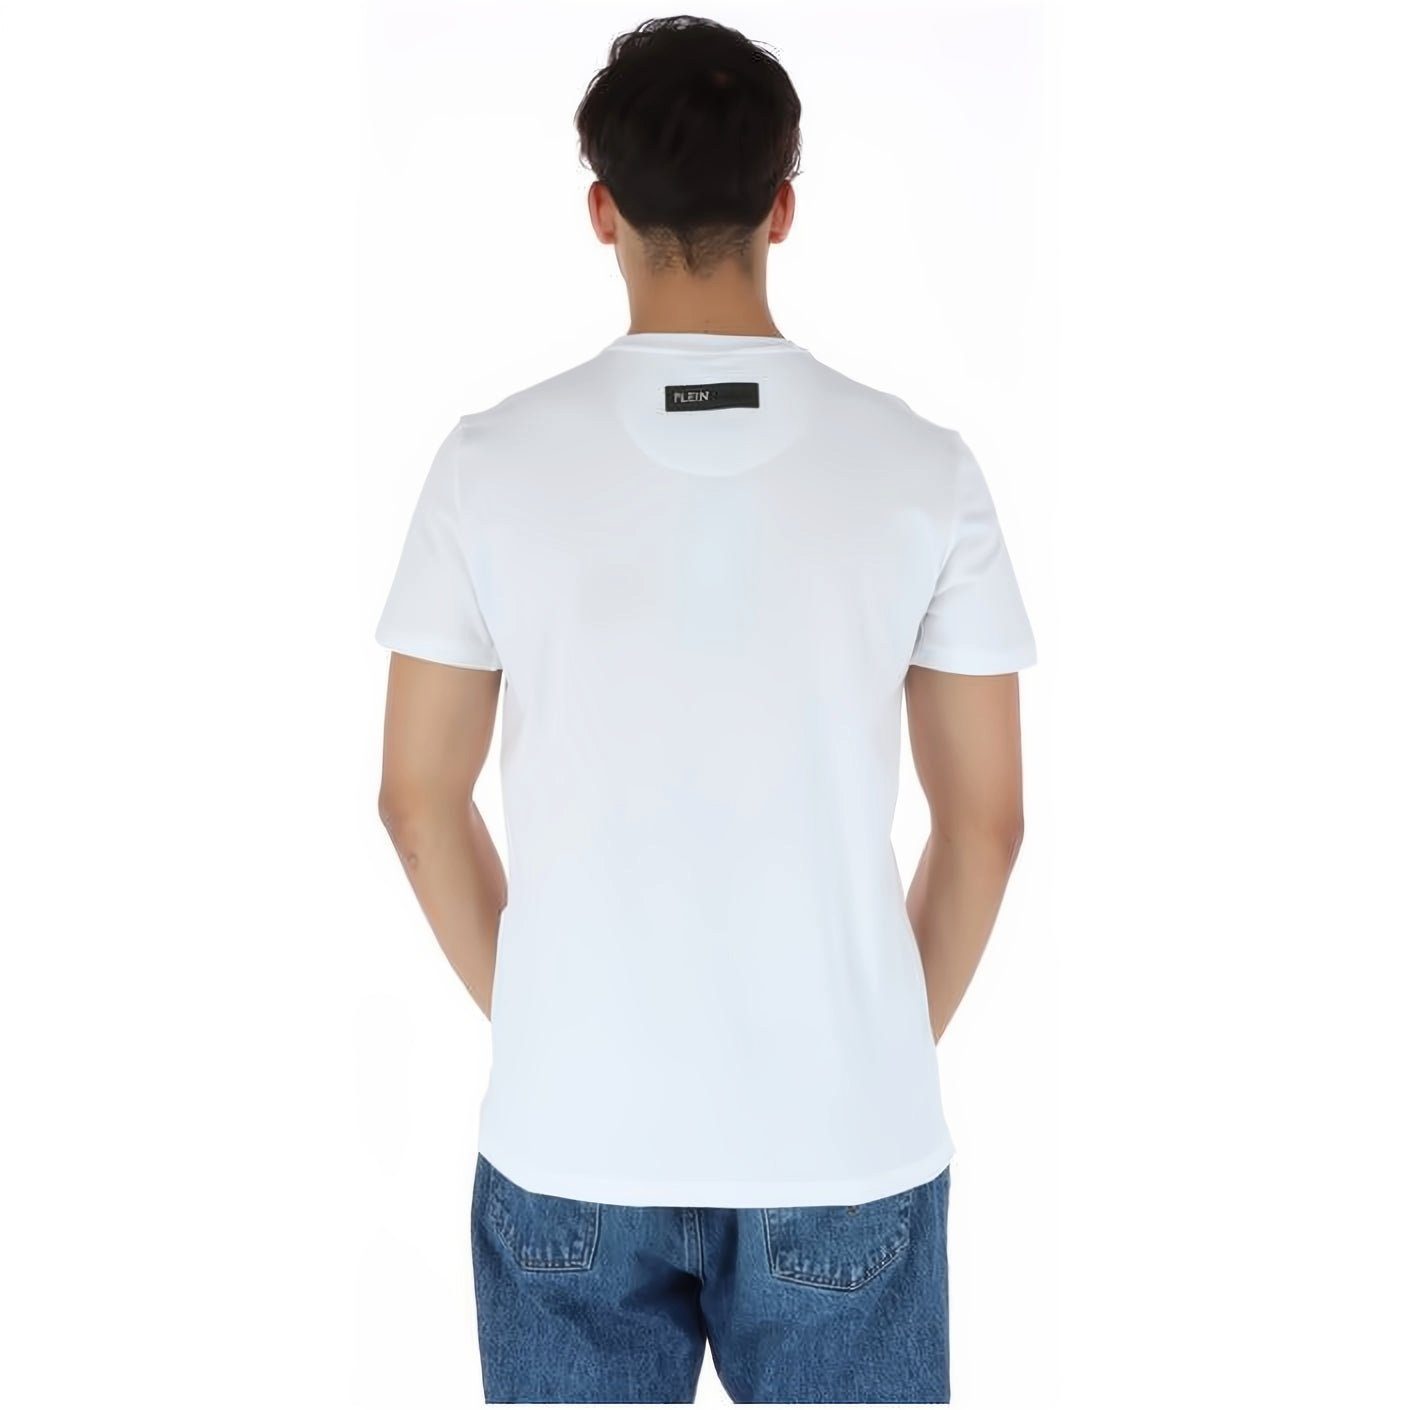 PLEIN SPORT T-Shirt hoher Farbauswahl ROUND vielfältige NECK Tragekomfort, Look, Stylischer